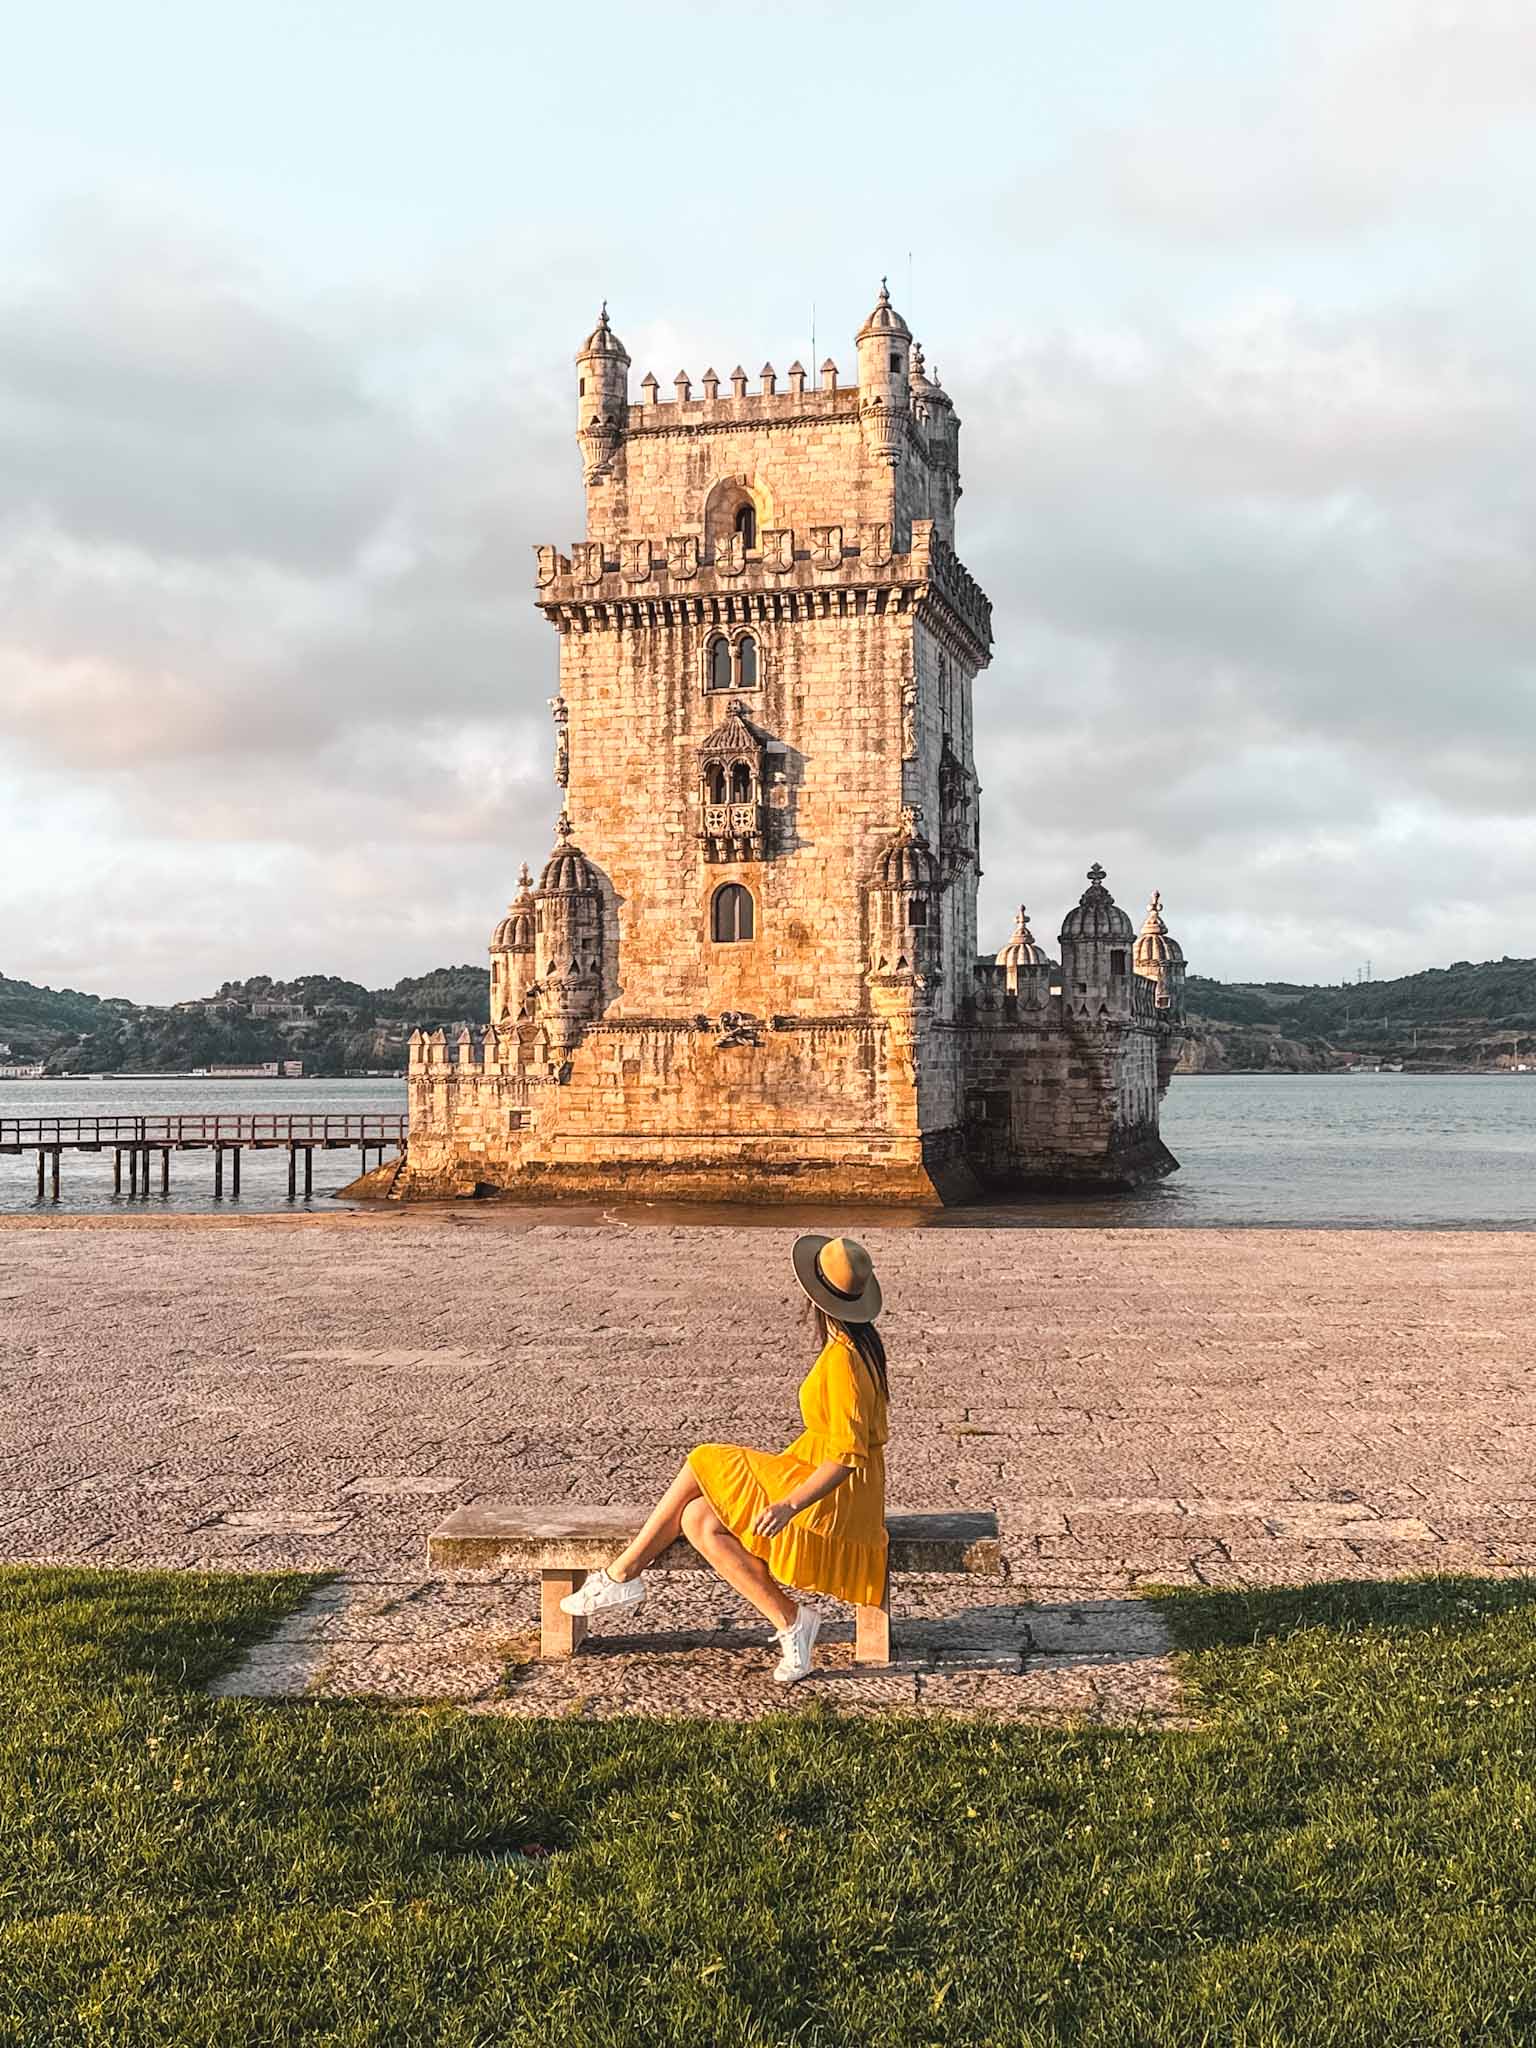 Best Instagram photo spots in Lisbon - Belém Tower